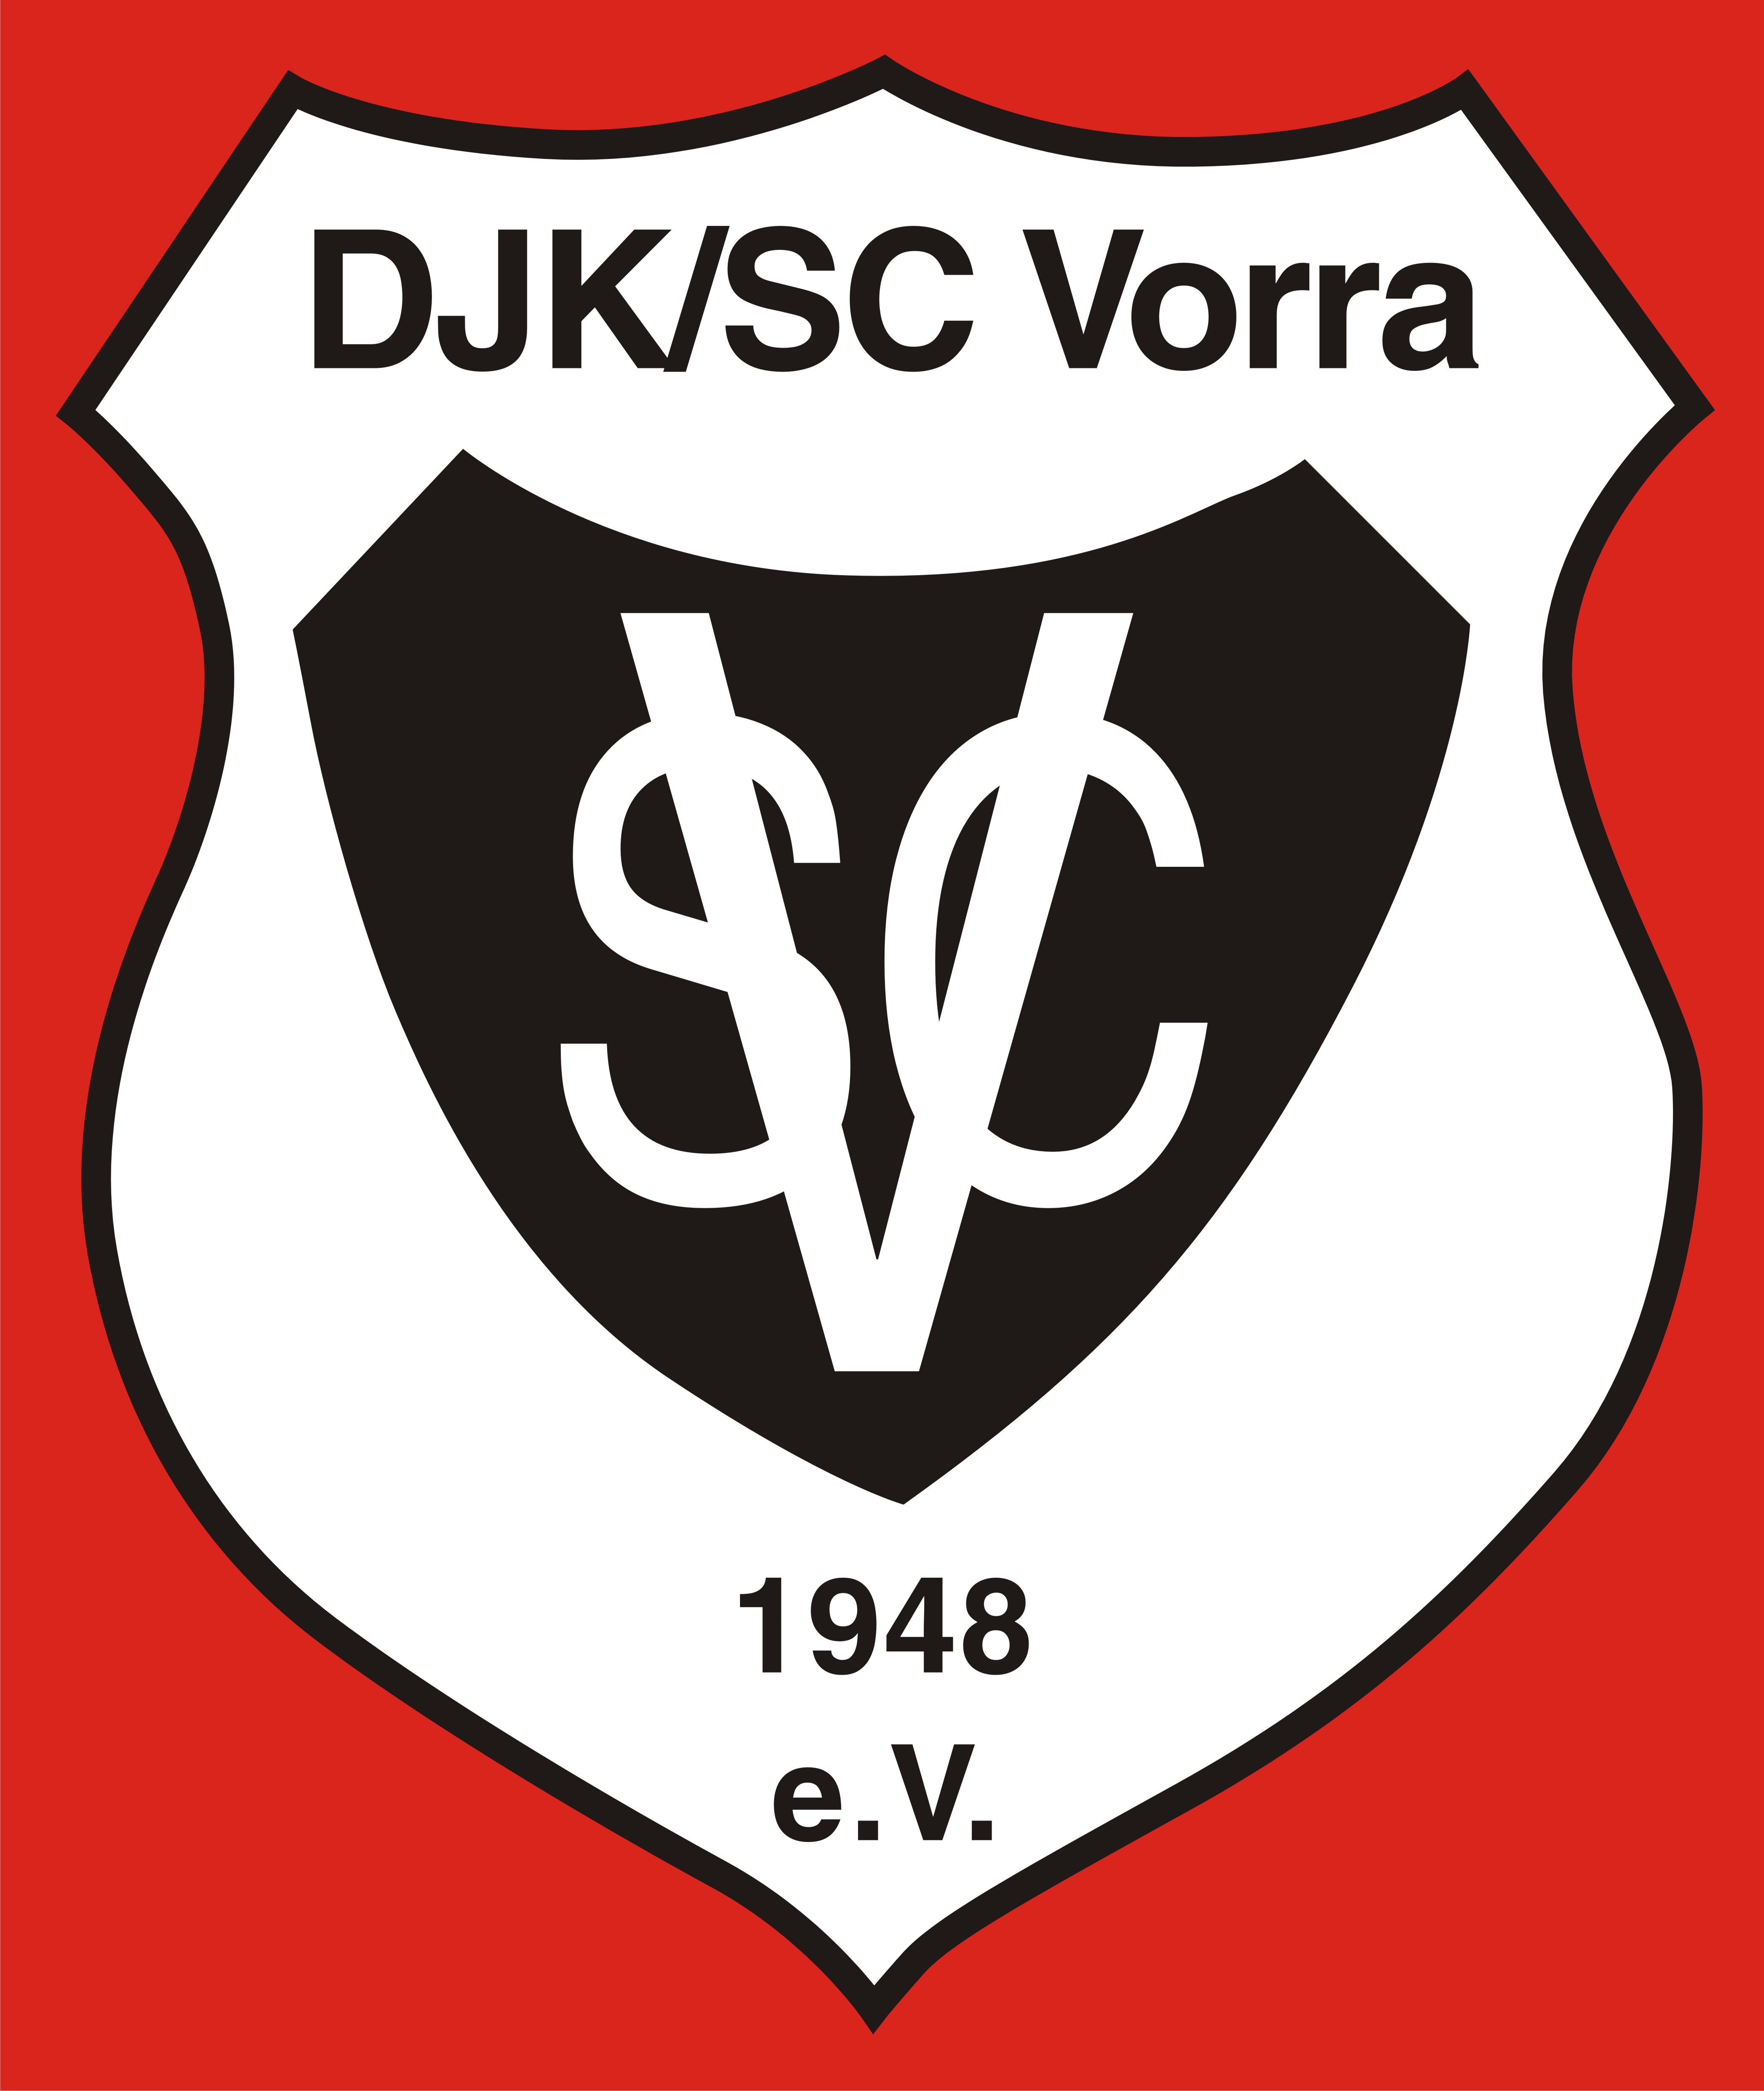 DJK SC Vorra logo